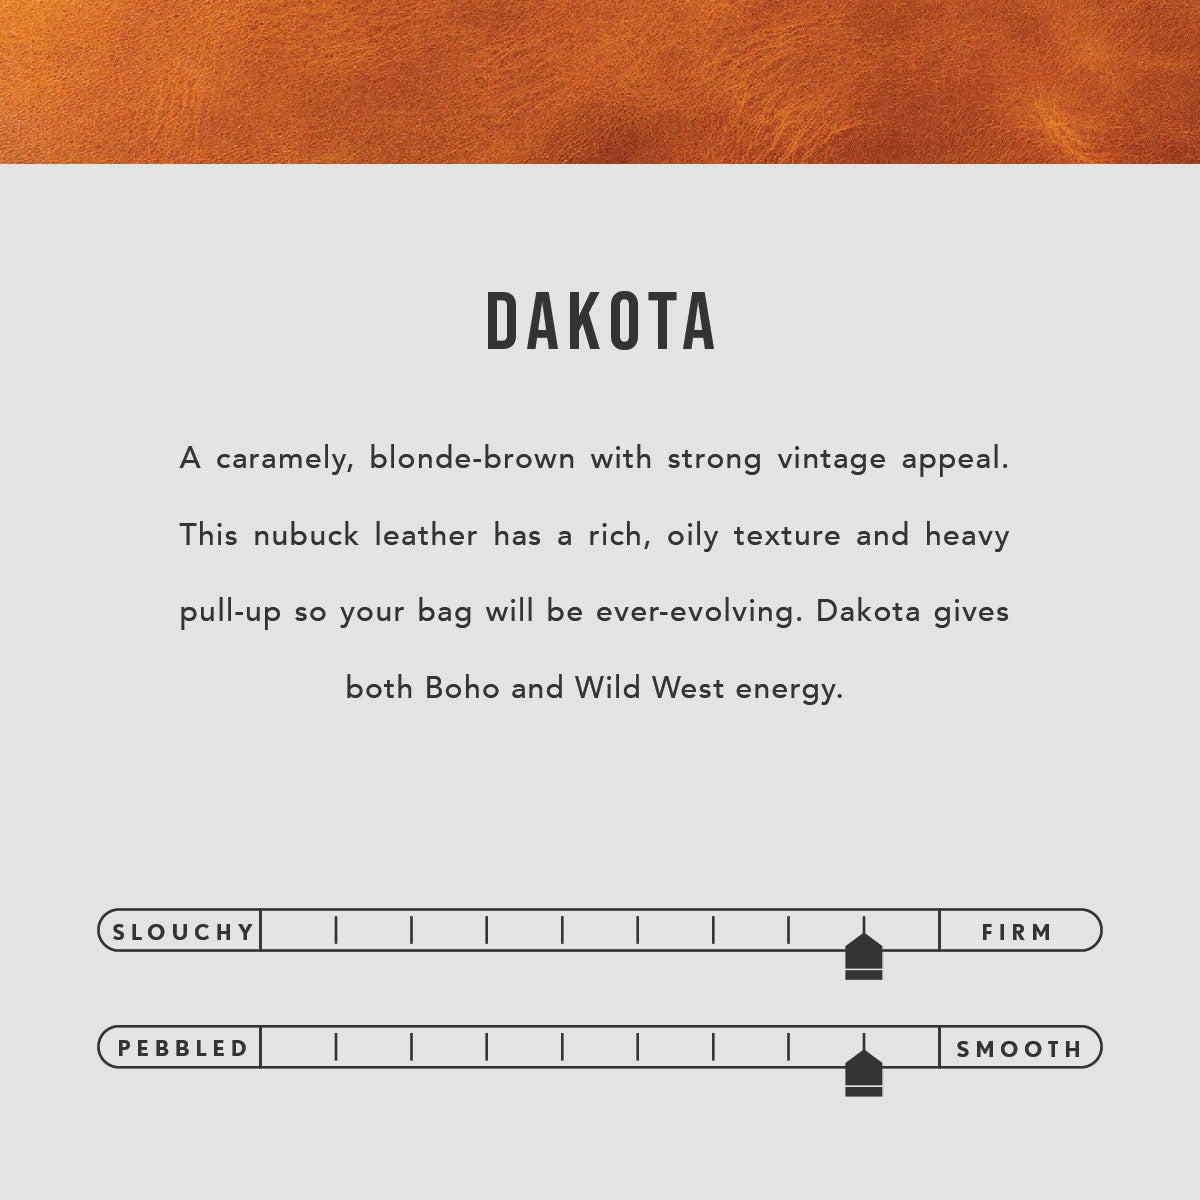 Dakota | infographic